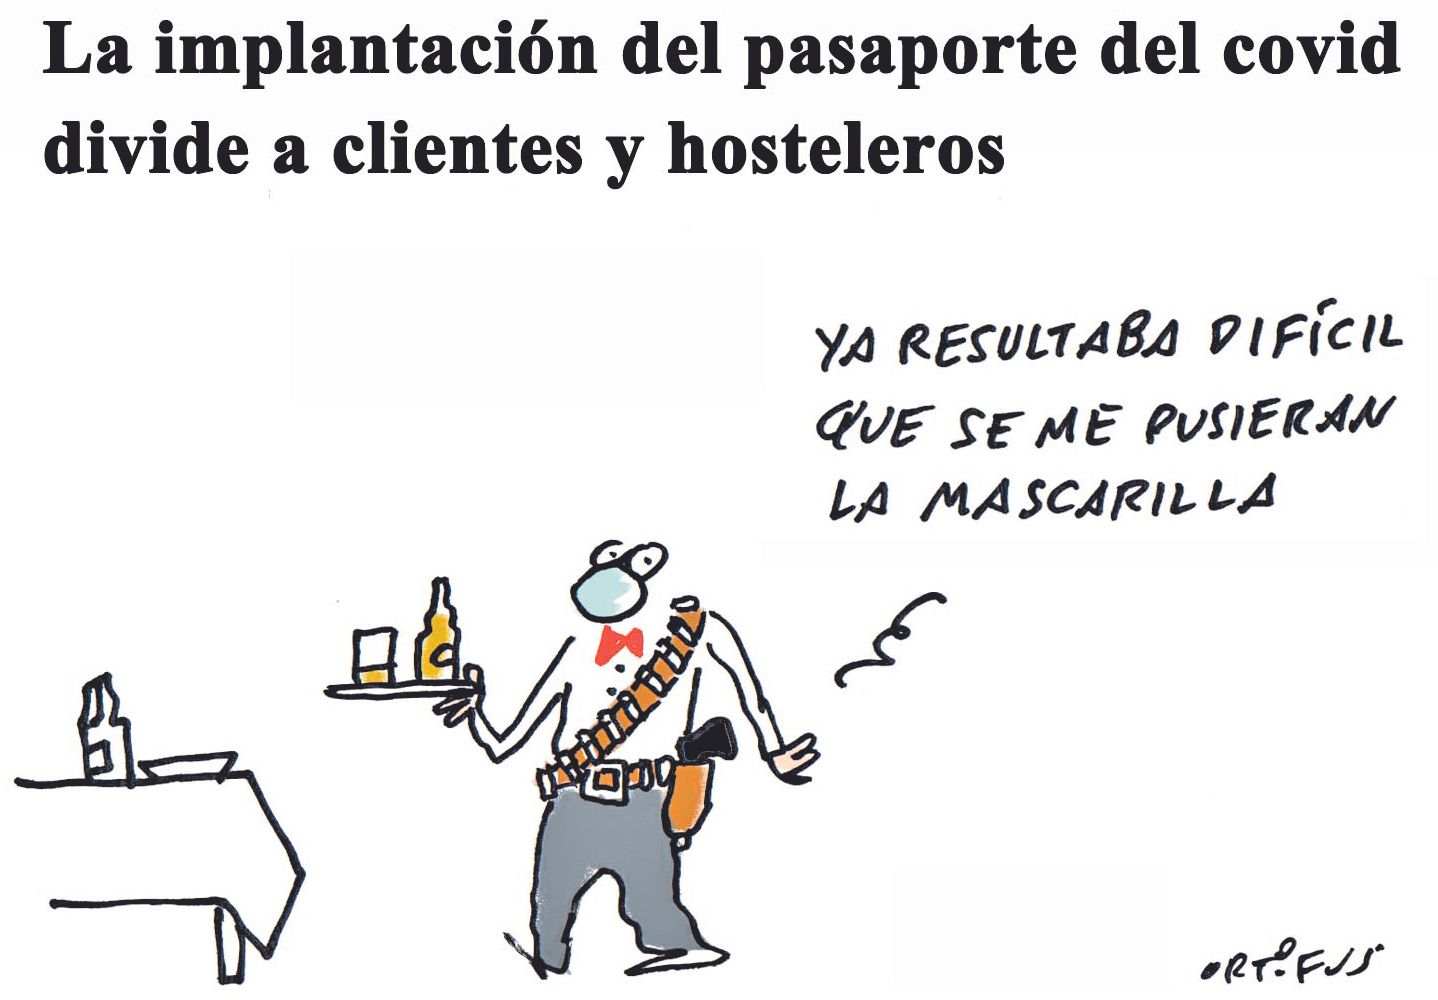 La implantación del pasaporte del covid divide a clientes y hosteleros